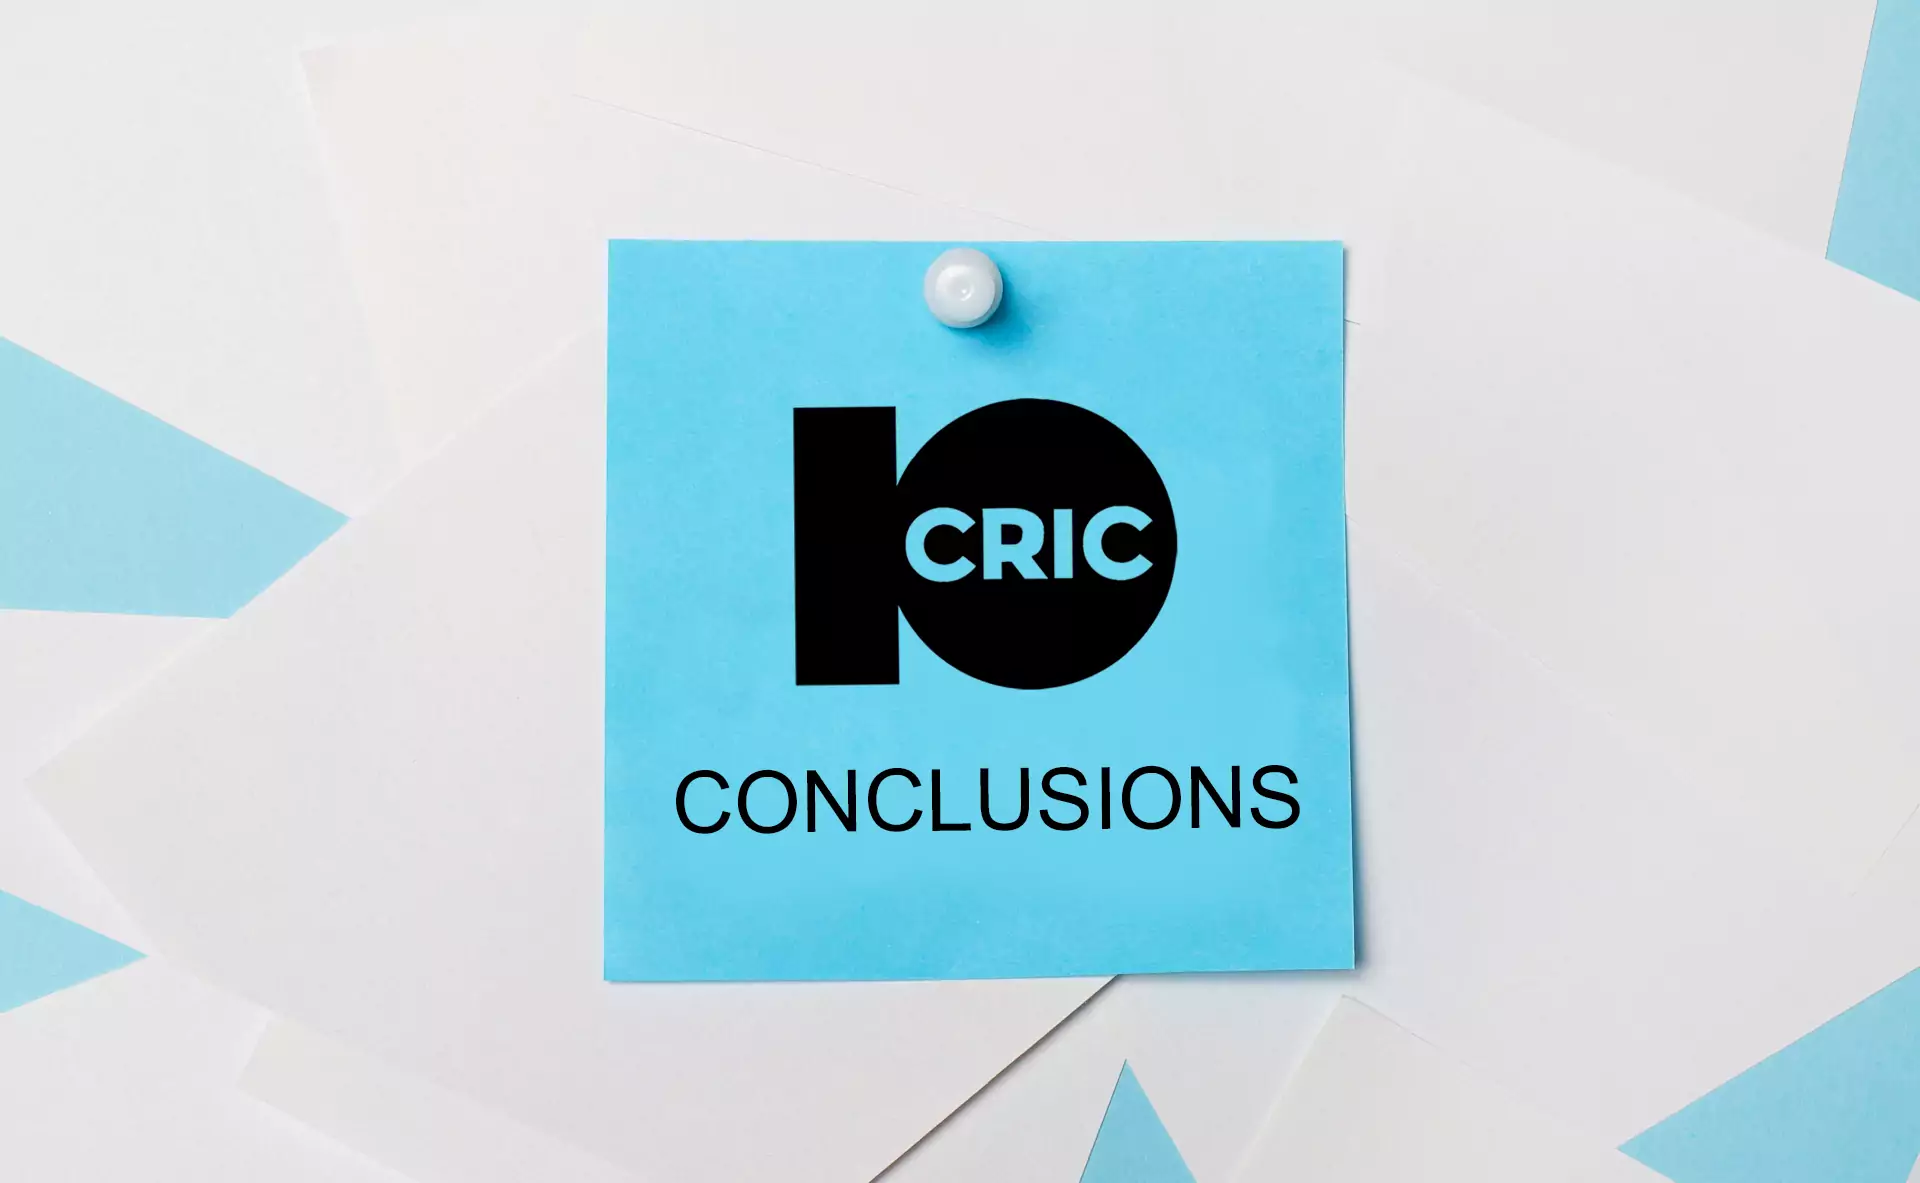 10Cric भारतीय उपयोगकर्ताओं के लिए सर्वश्रेष्ठ सट्टेबाजी और कैसीनो साइटों में से एक है।